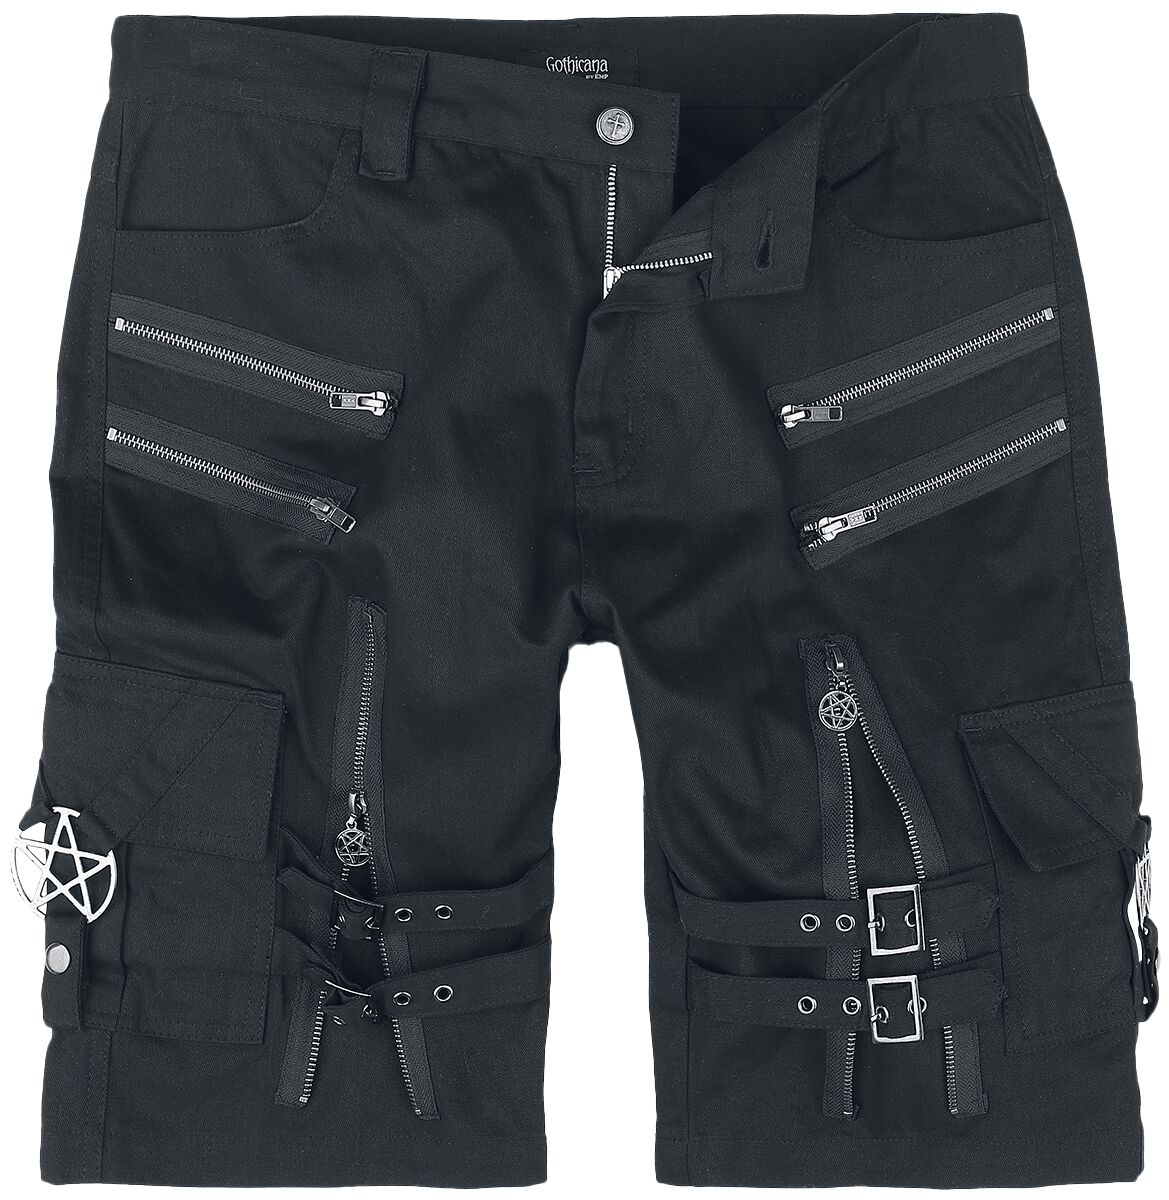 Gothicana by EMP - Gothic Short - Shorts with straps, buckles and zipper - S bis XXL - für Männer - Größe XXL - schwarz